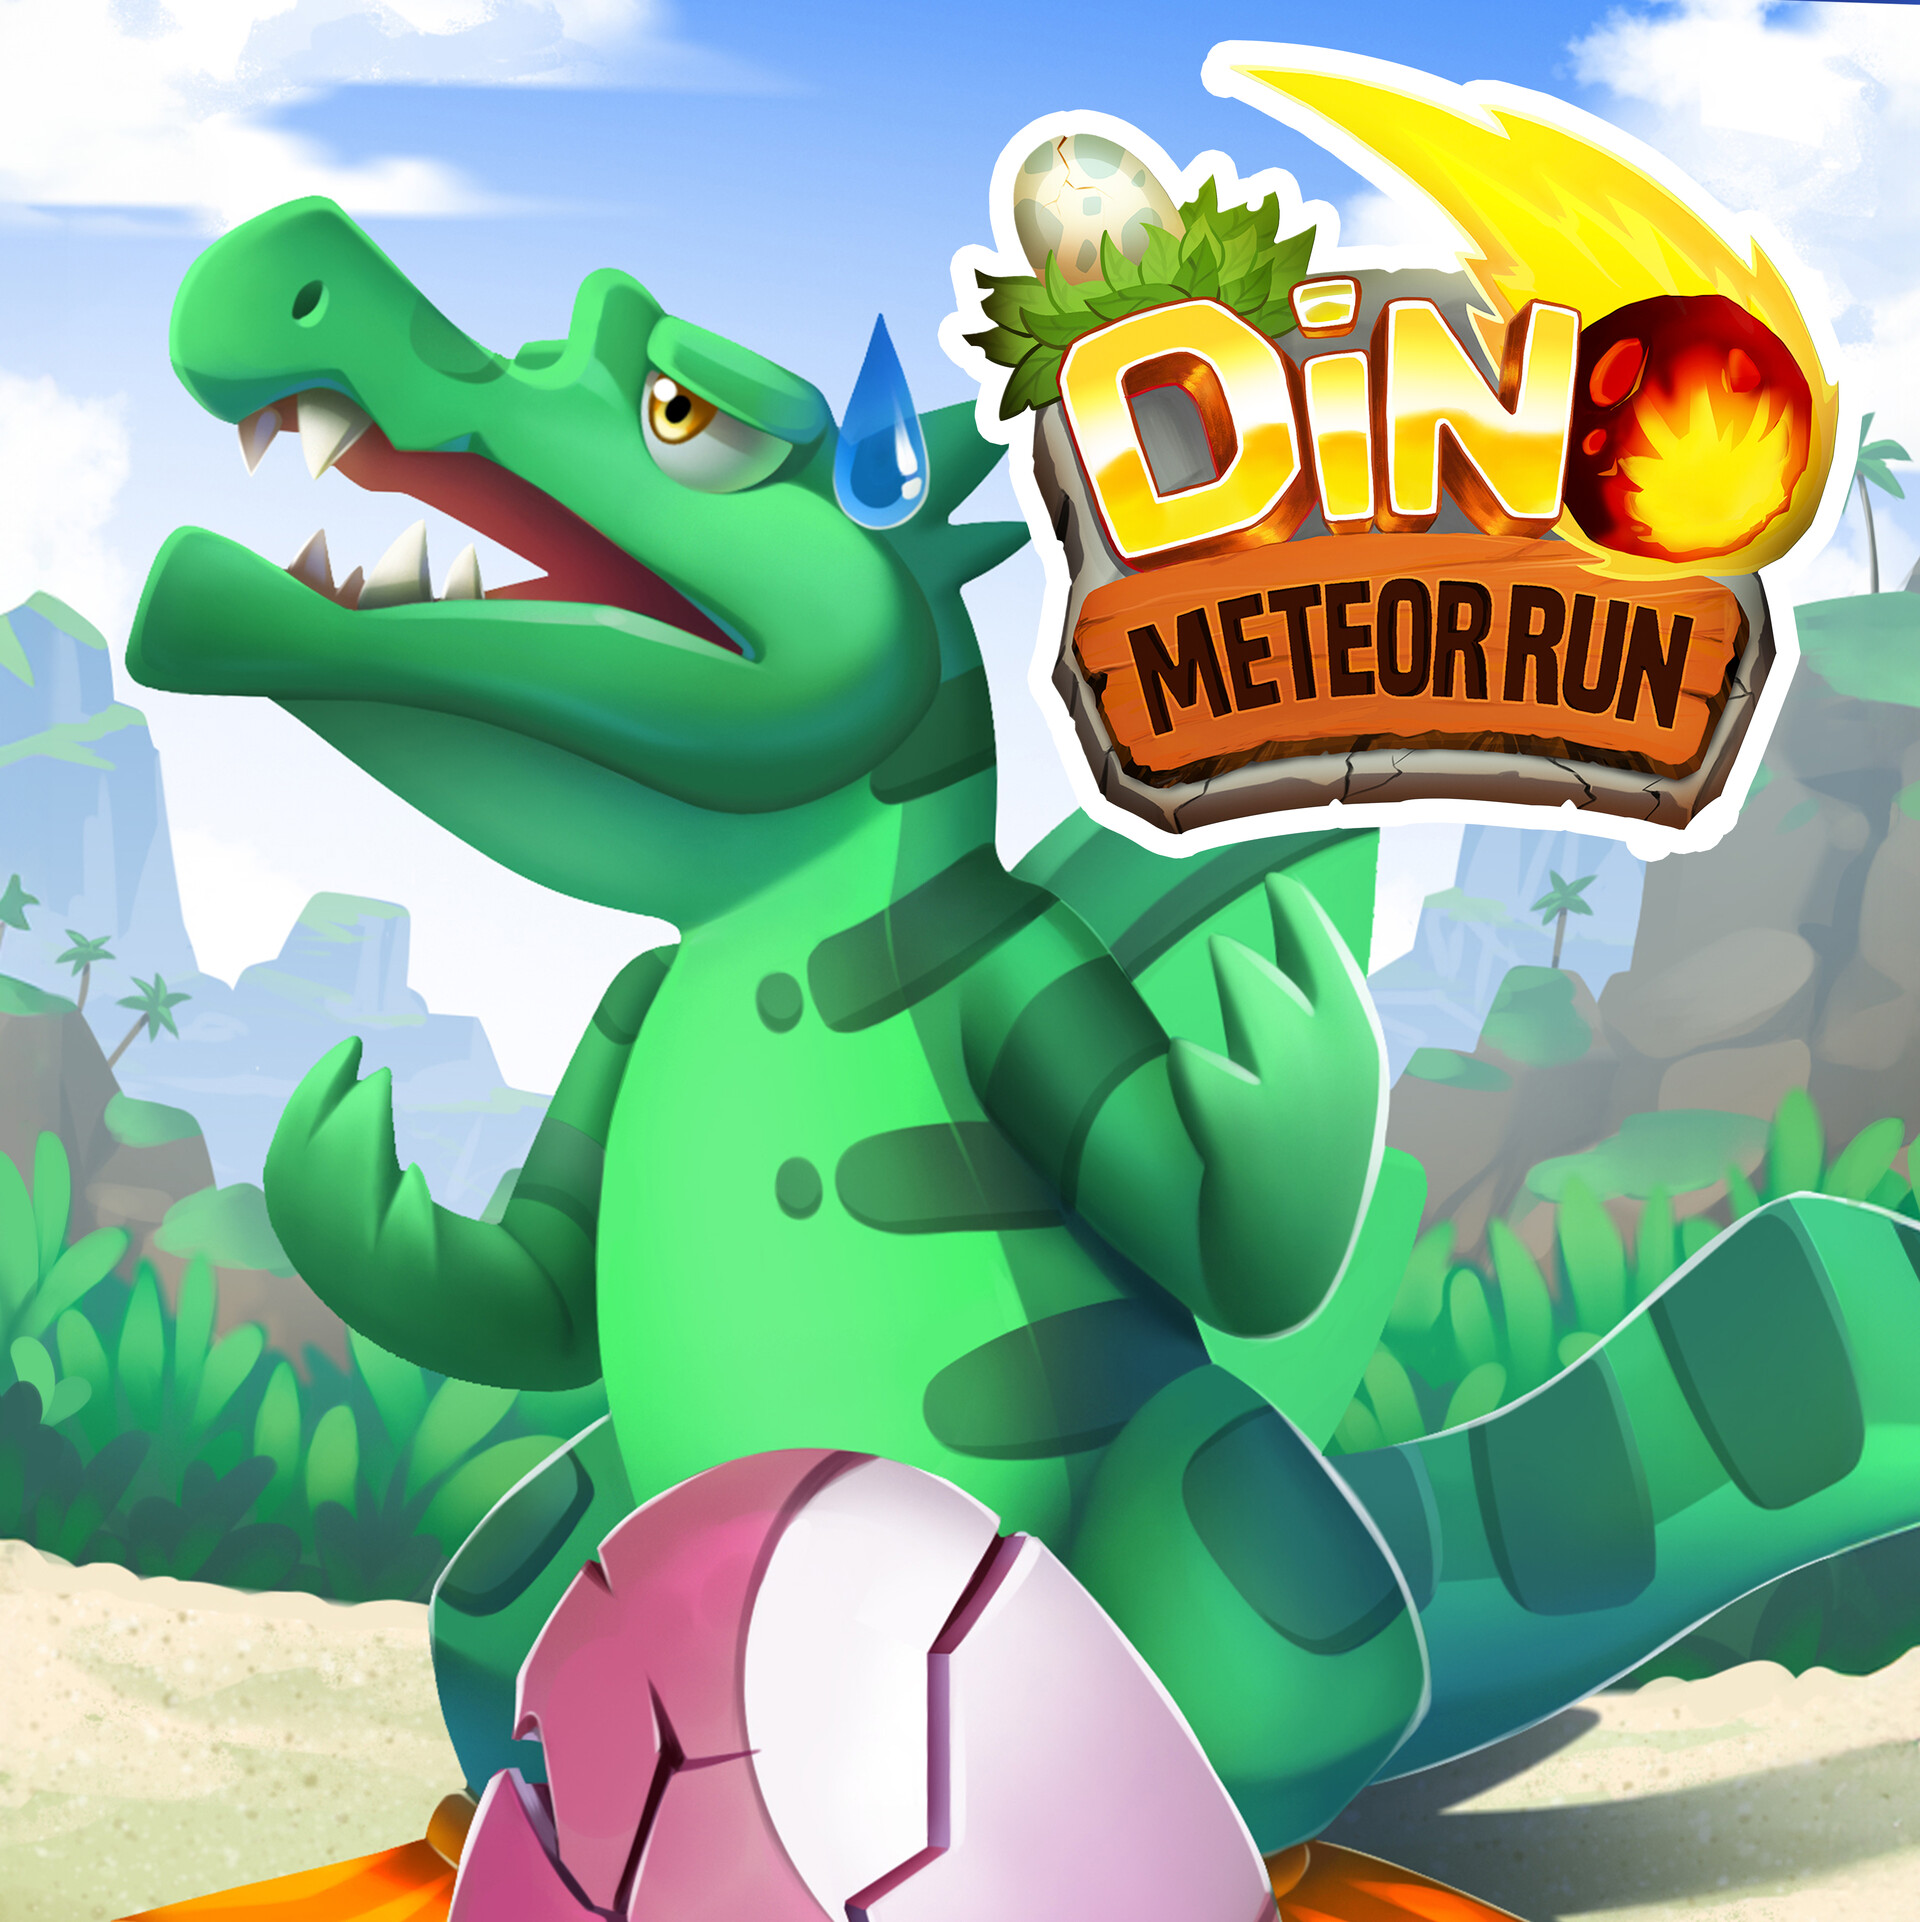 Dino Meteor Run! on Behance